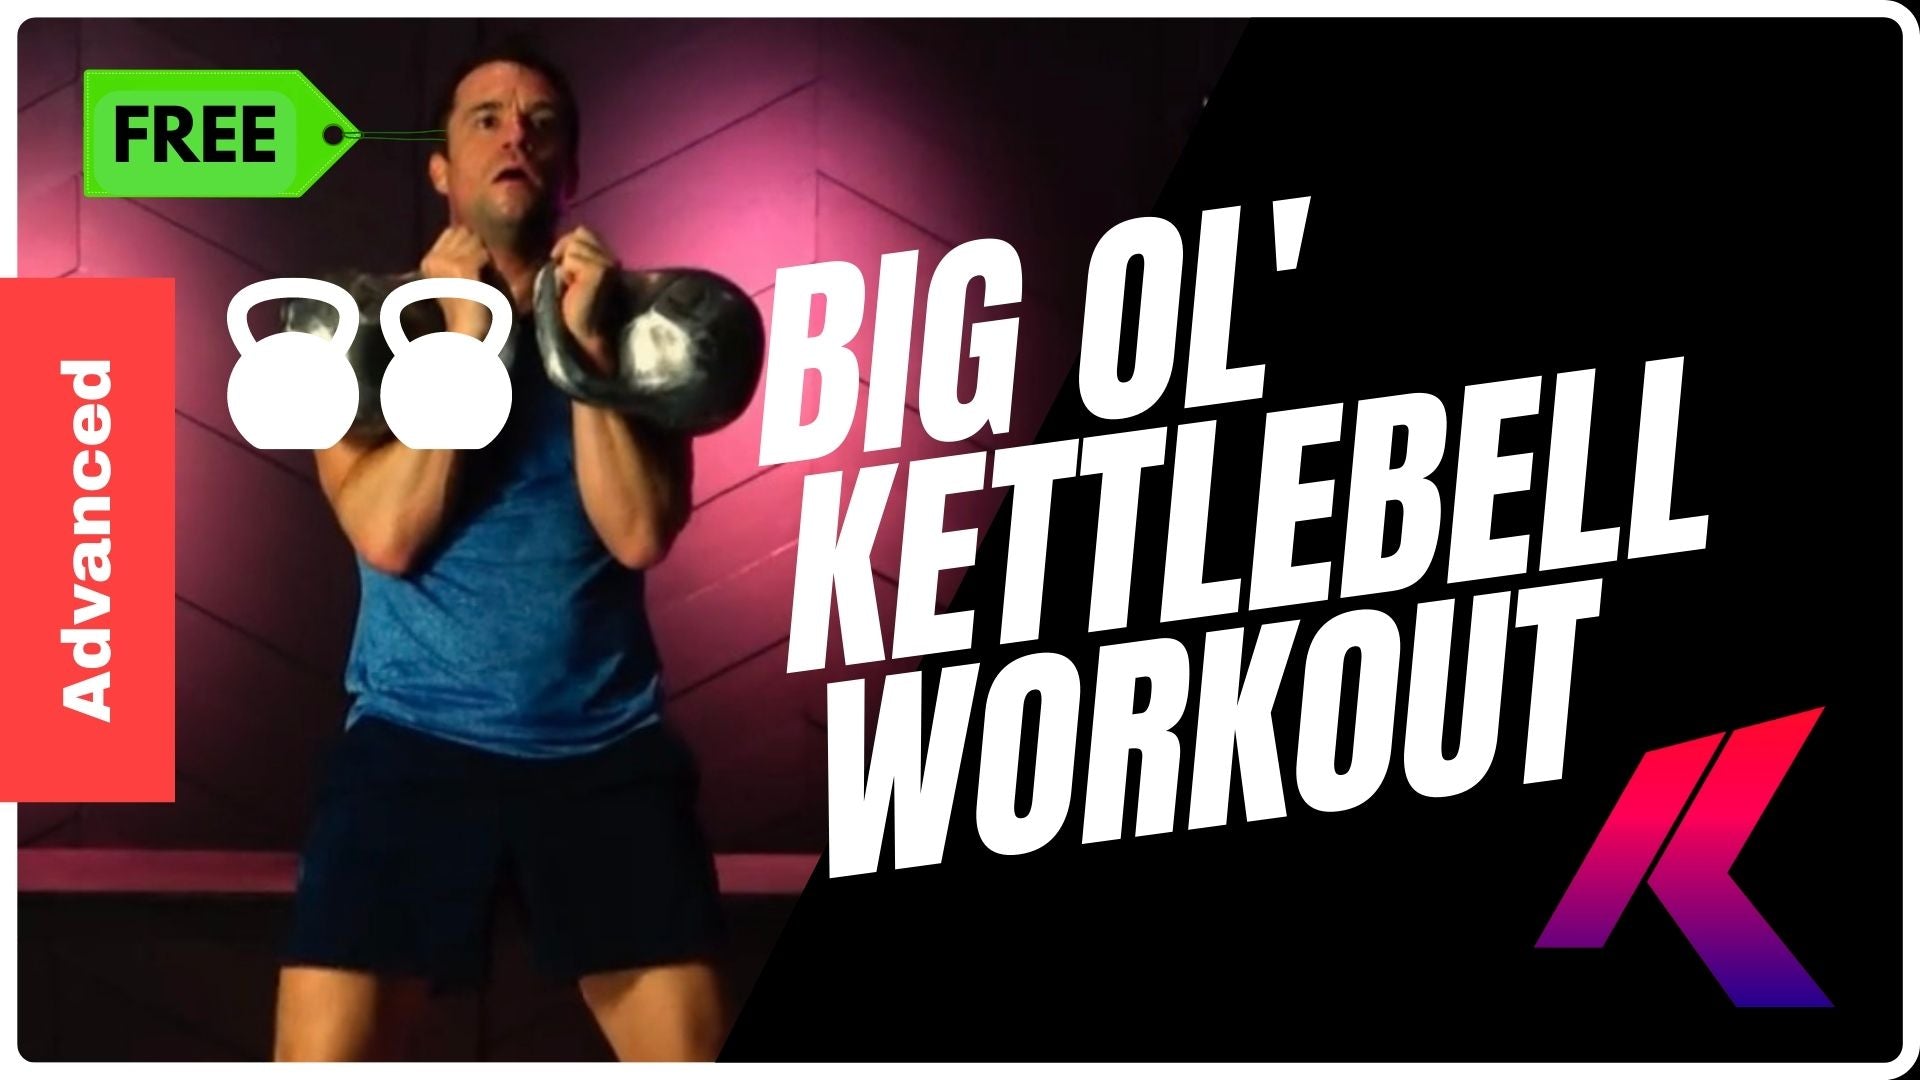 Kettlebell Workout with Kettlebells | Pro Kettlebell